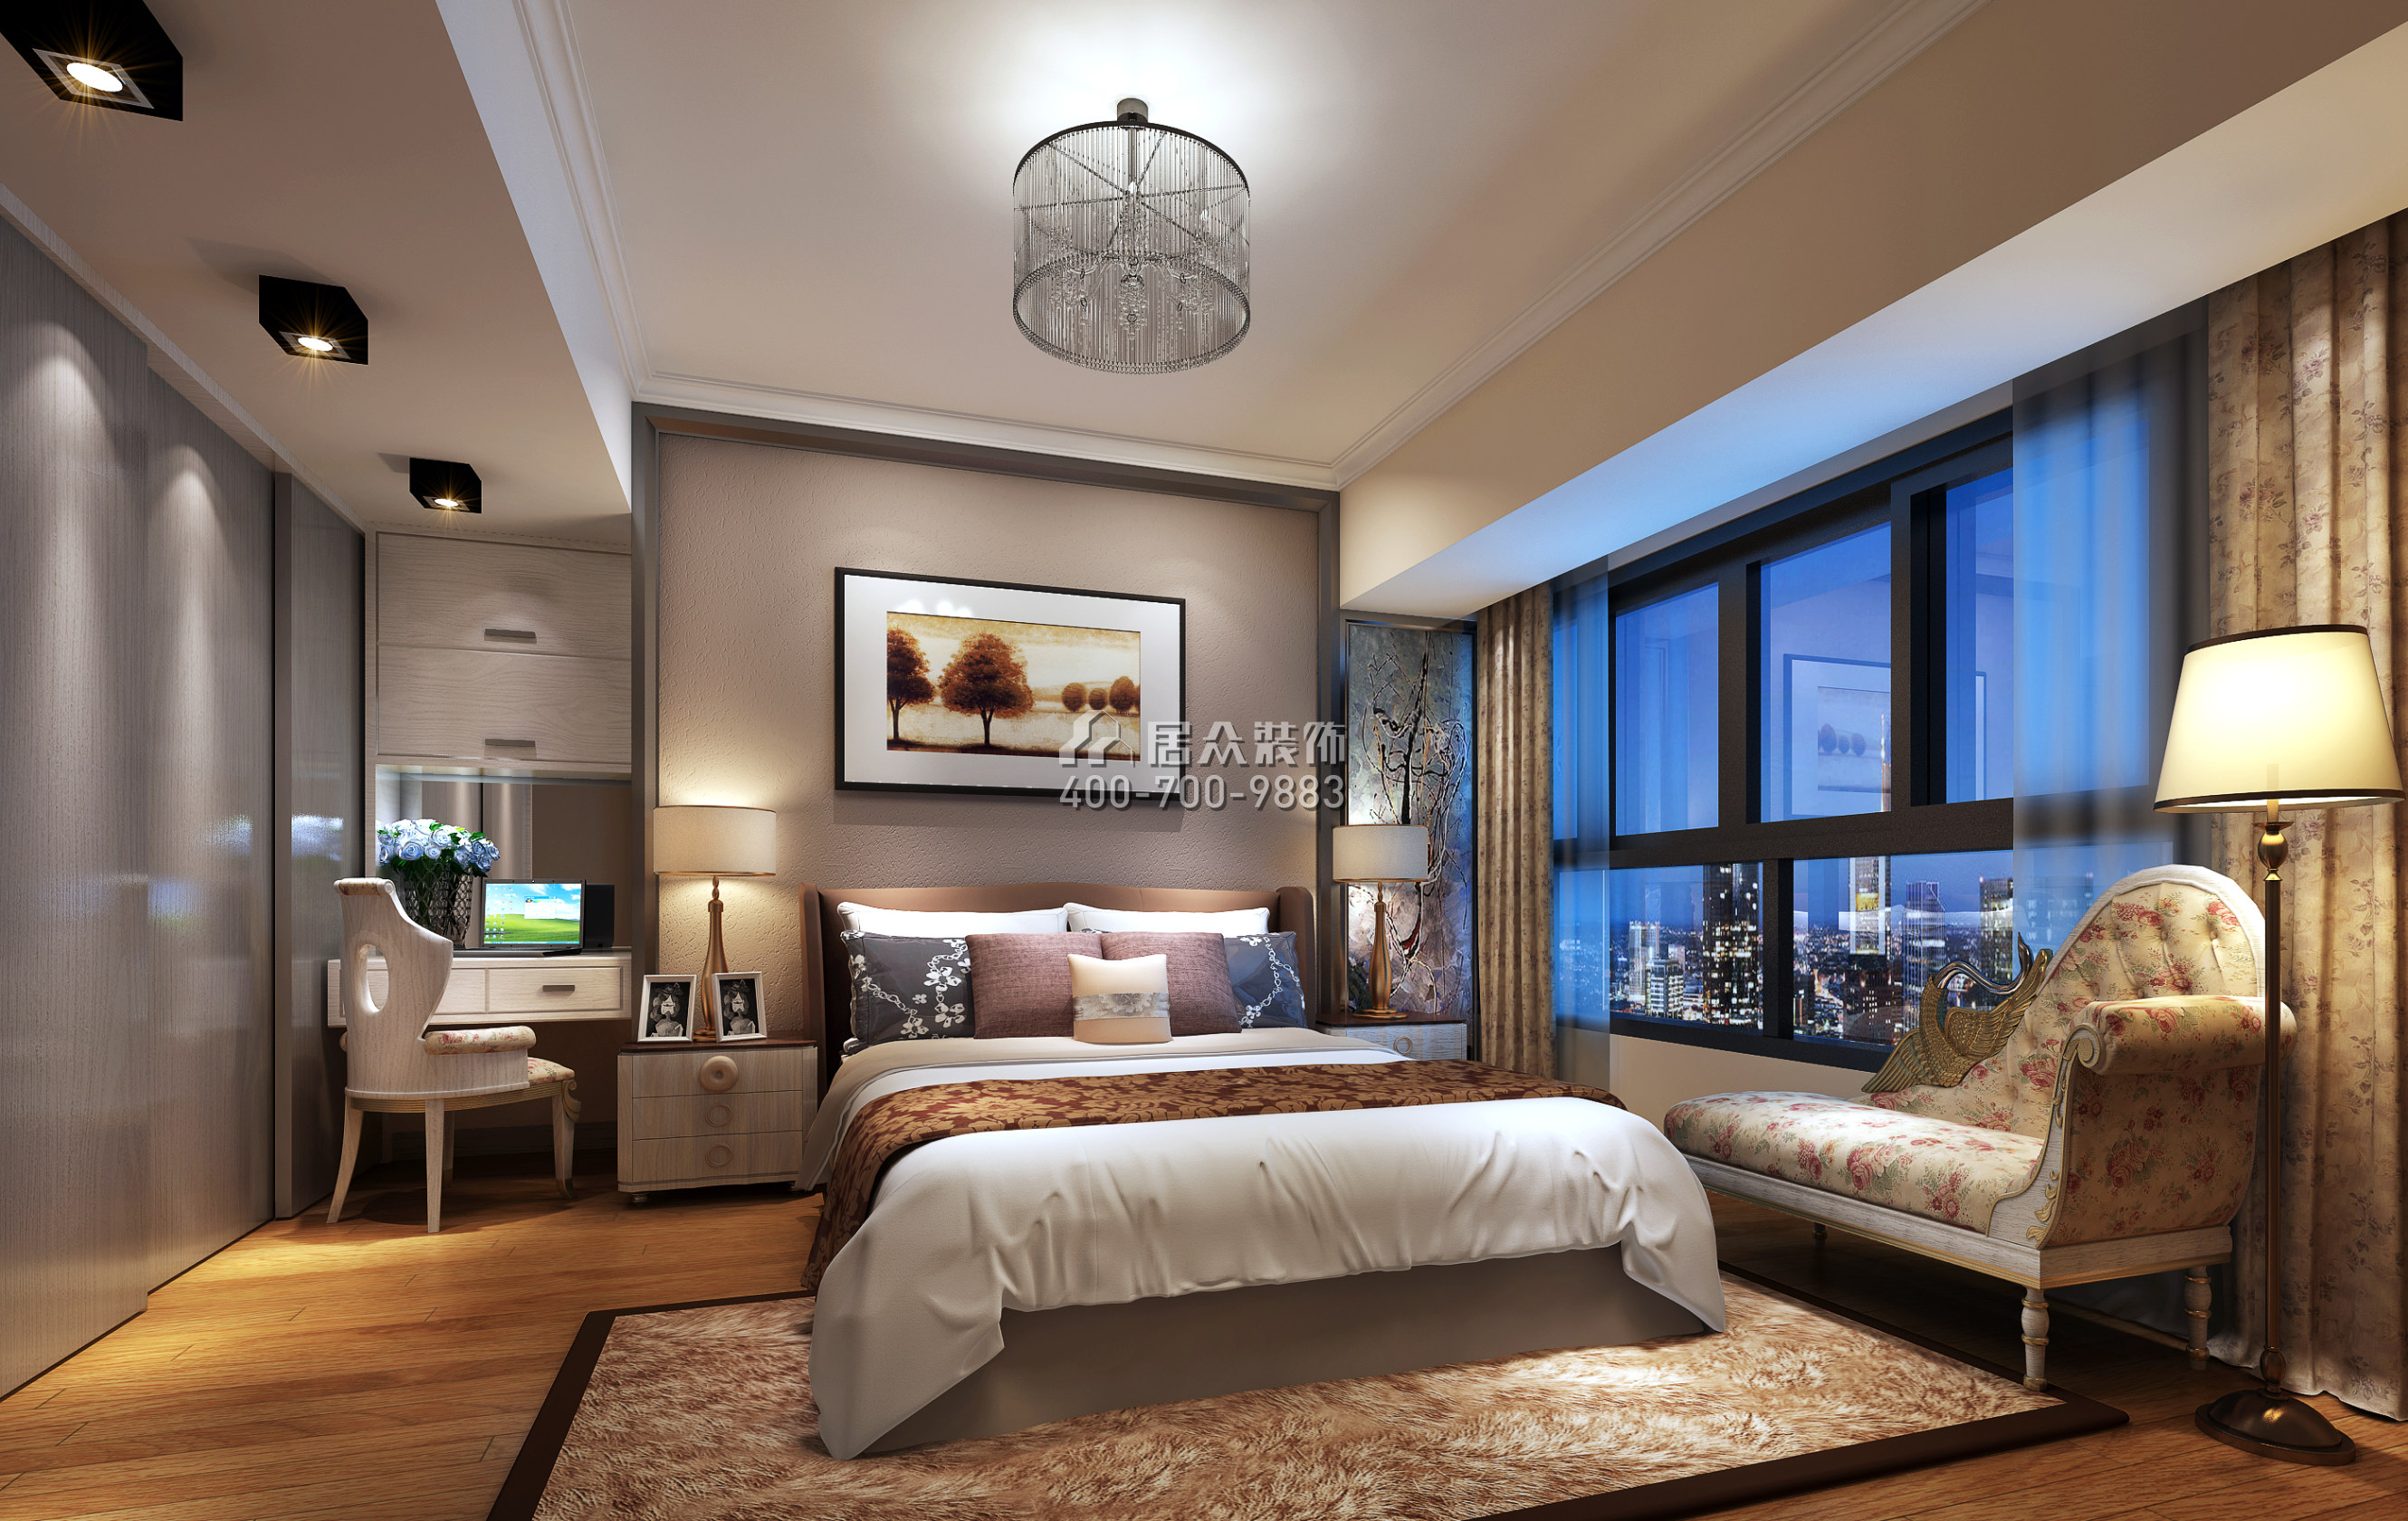 大运城邦一期176平方米现代简约风格平层户型卧室kok电竞平台效果图